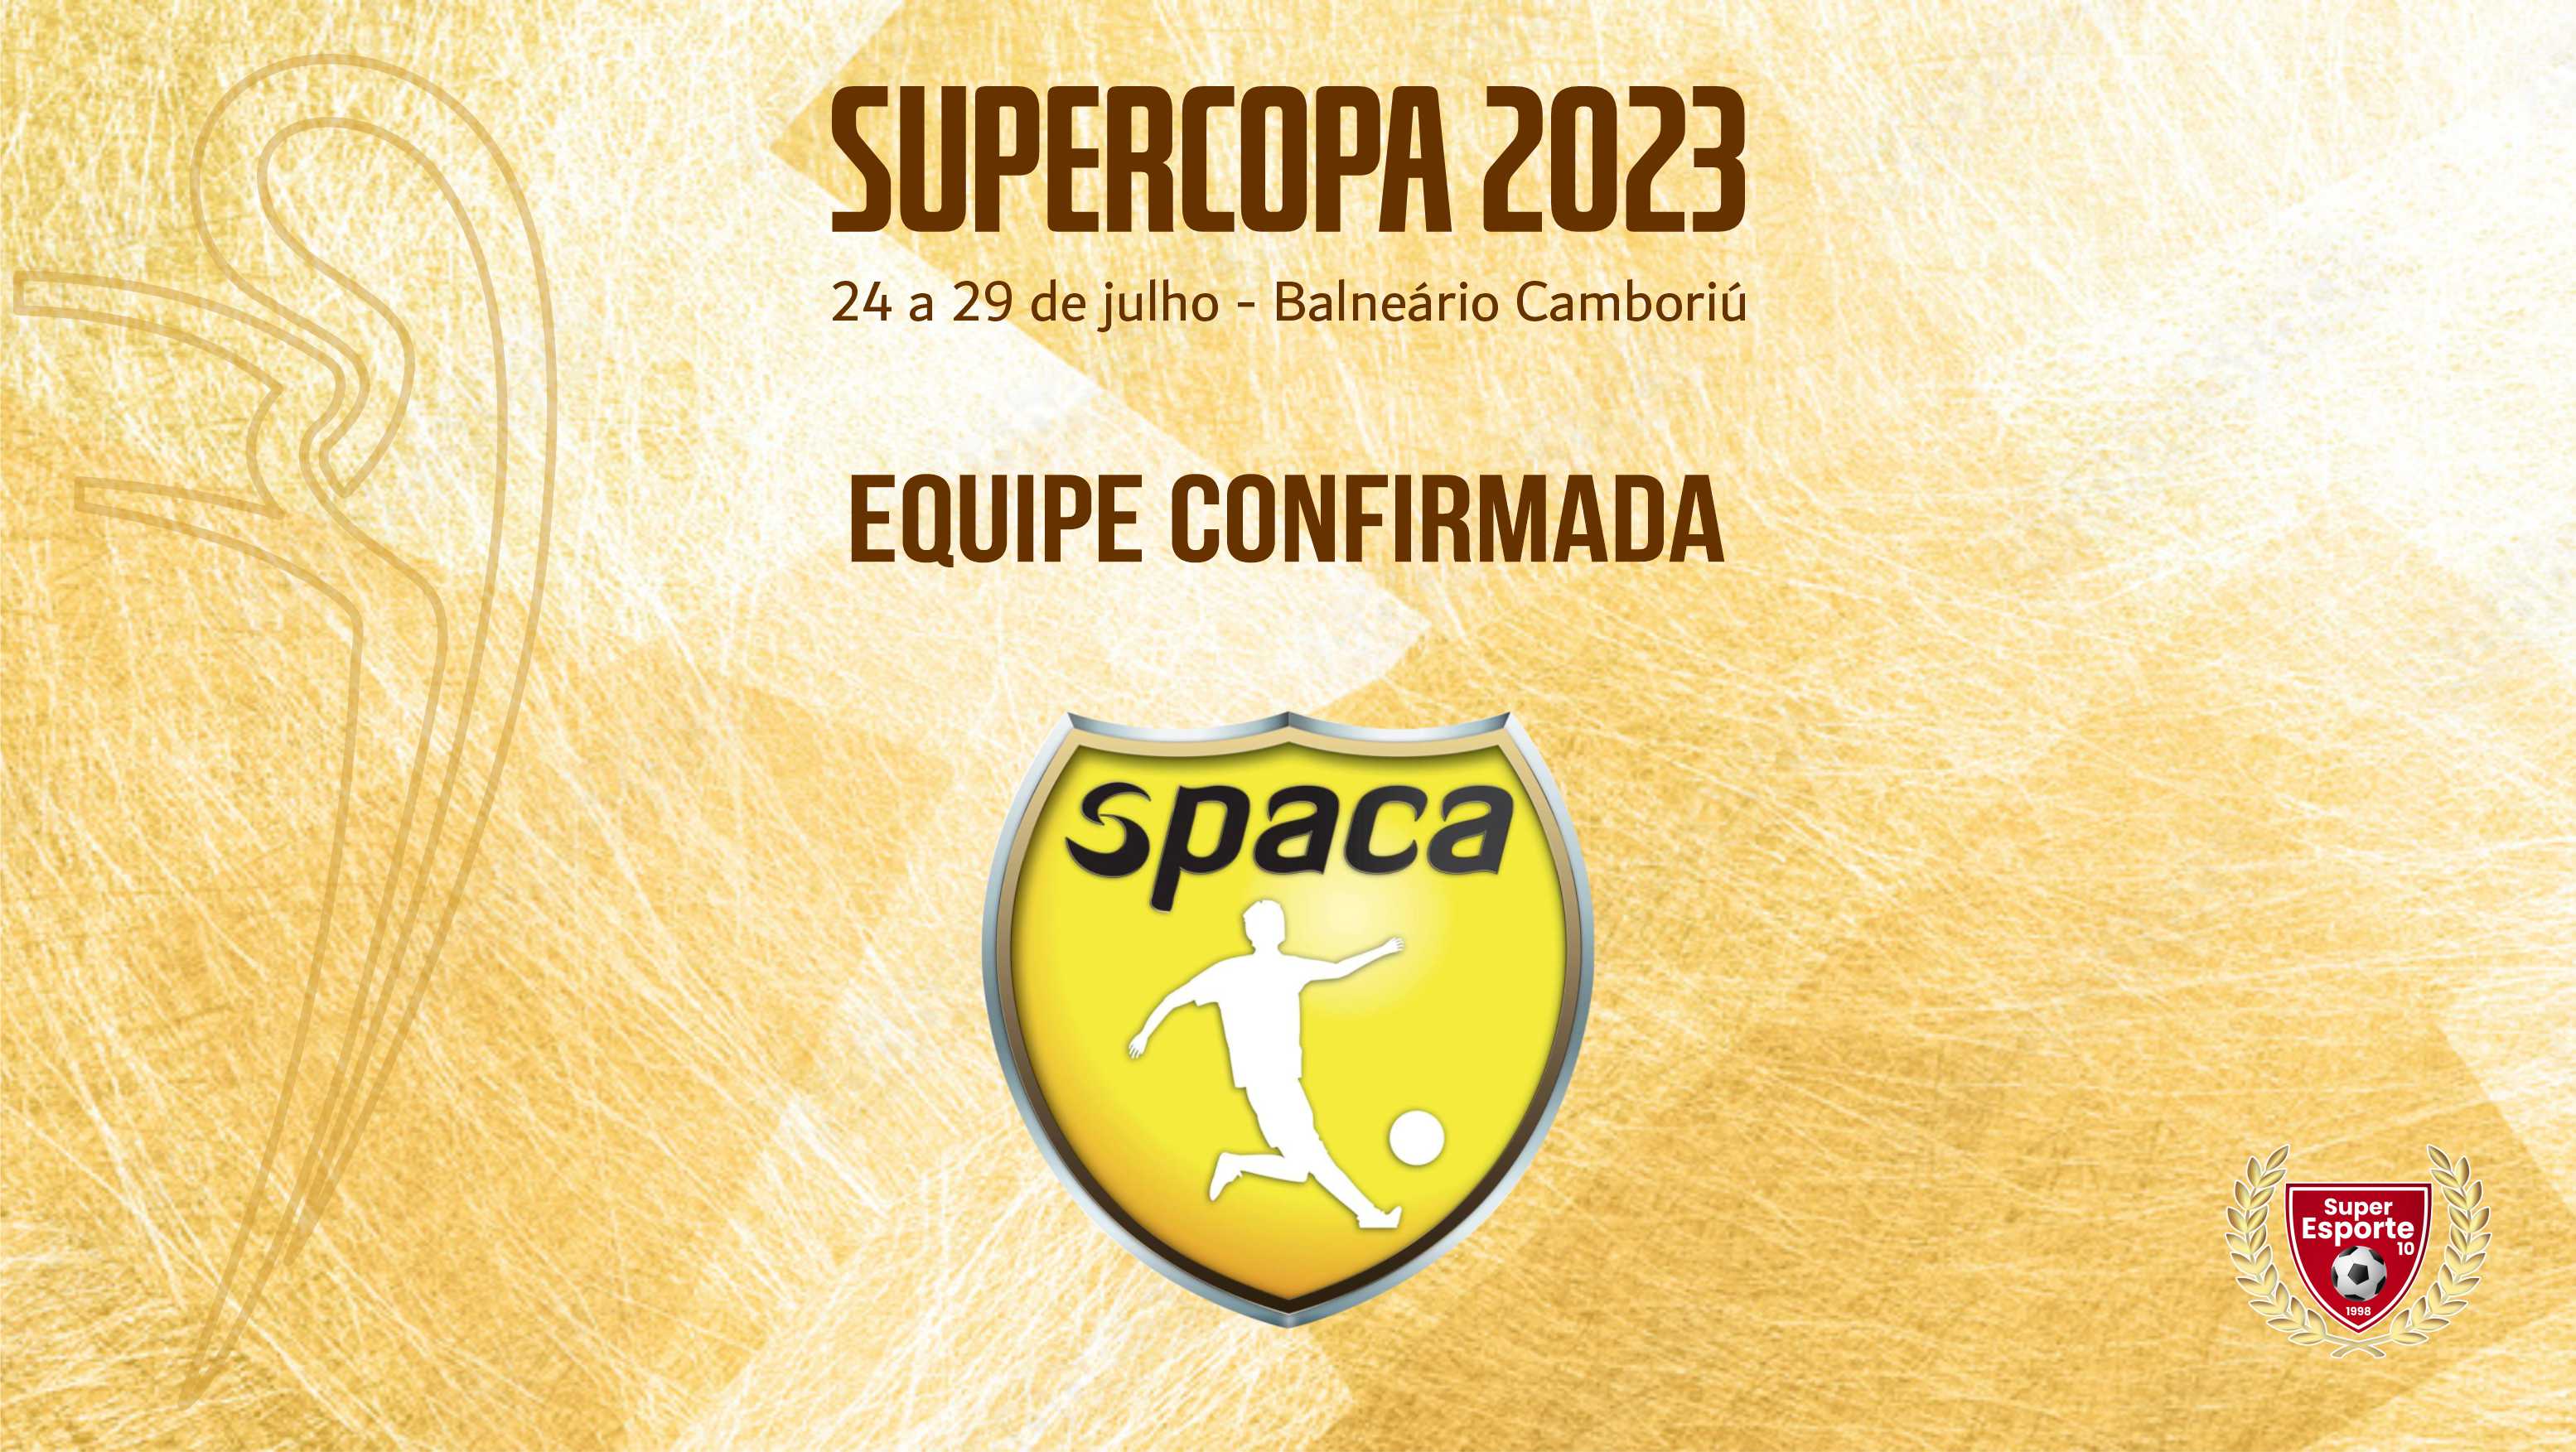 Supercopa também terá a presença da Spaca